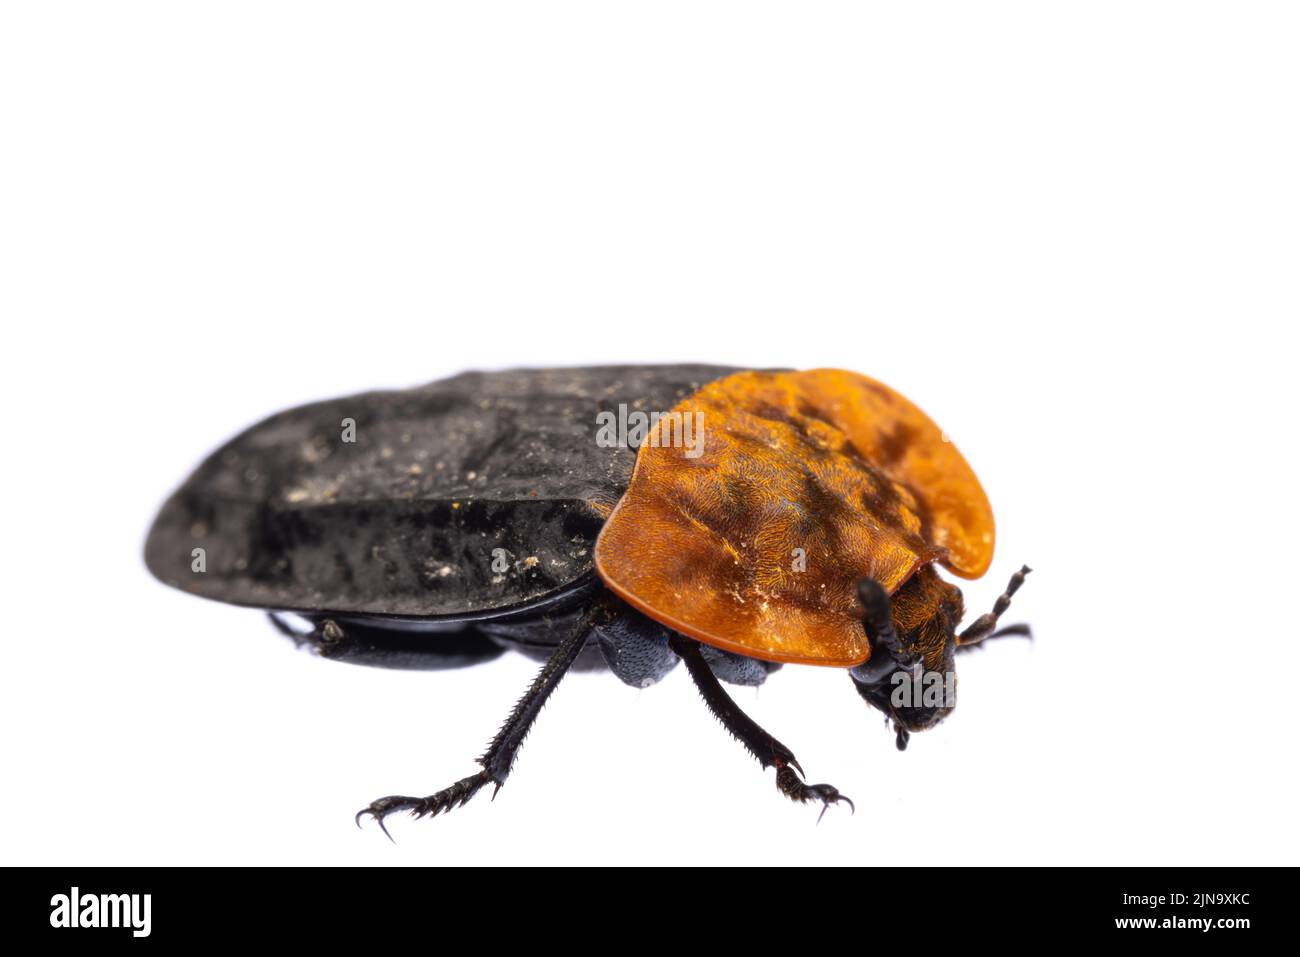 Insectes d'europe - coléoptères: Vue latérale macro du coléoptère à carapace rouge ( Oiceoptoma thoracicum german Rothalsige Silphe ) isolé sur le dos blanc Banque D'Images